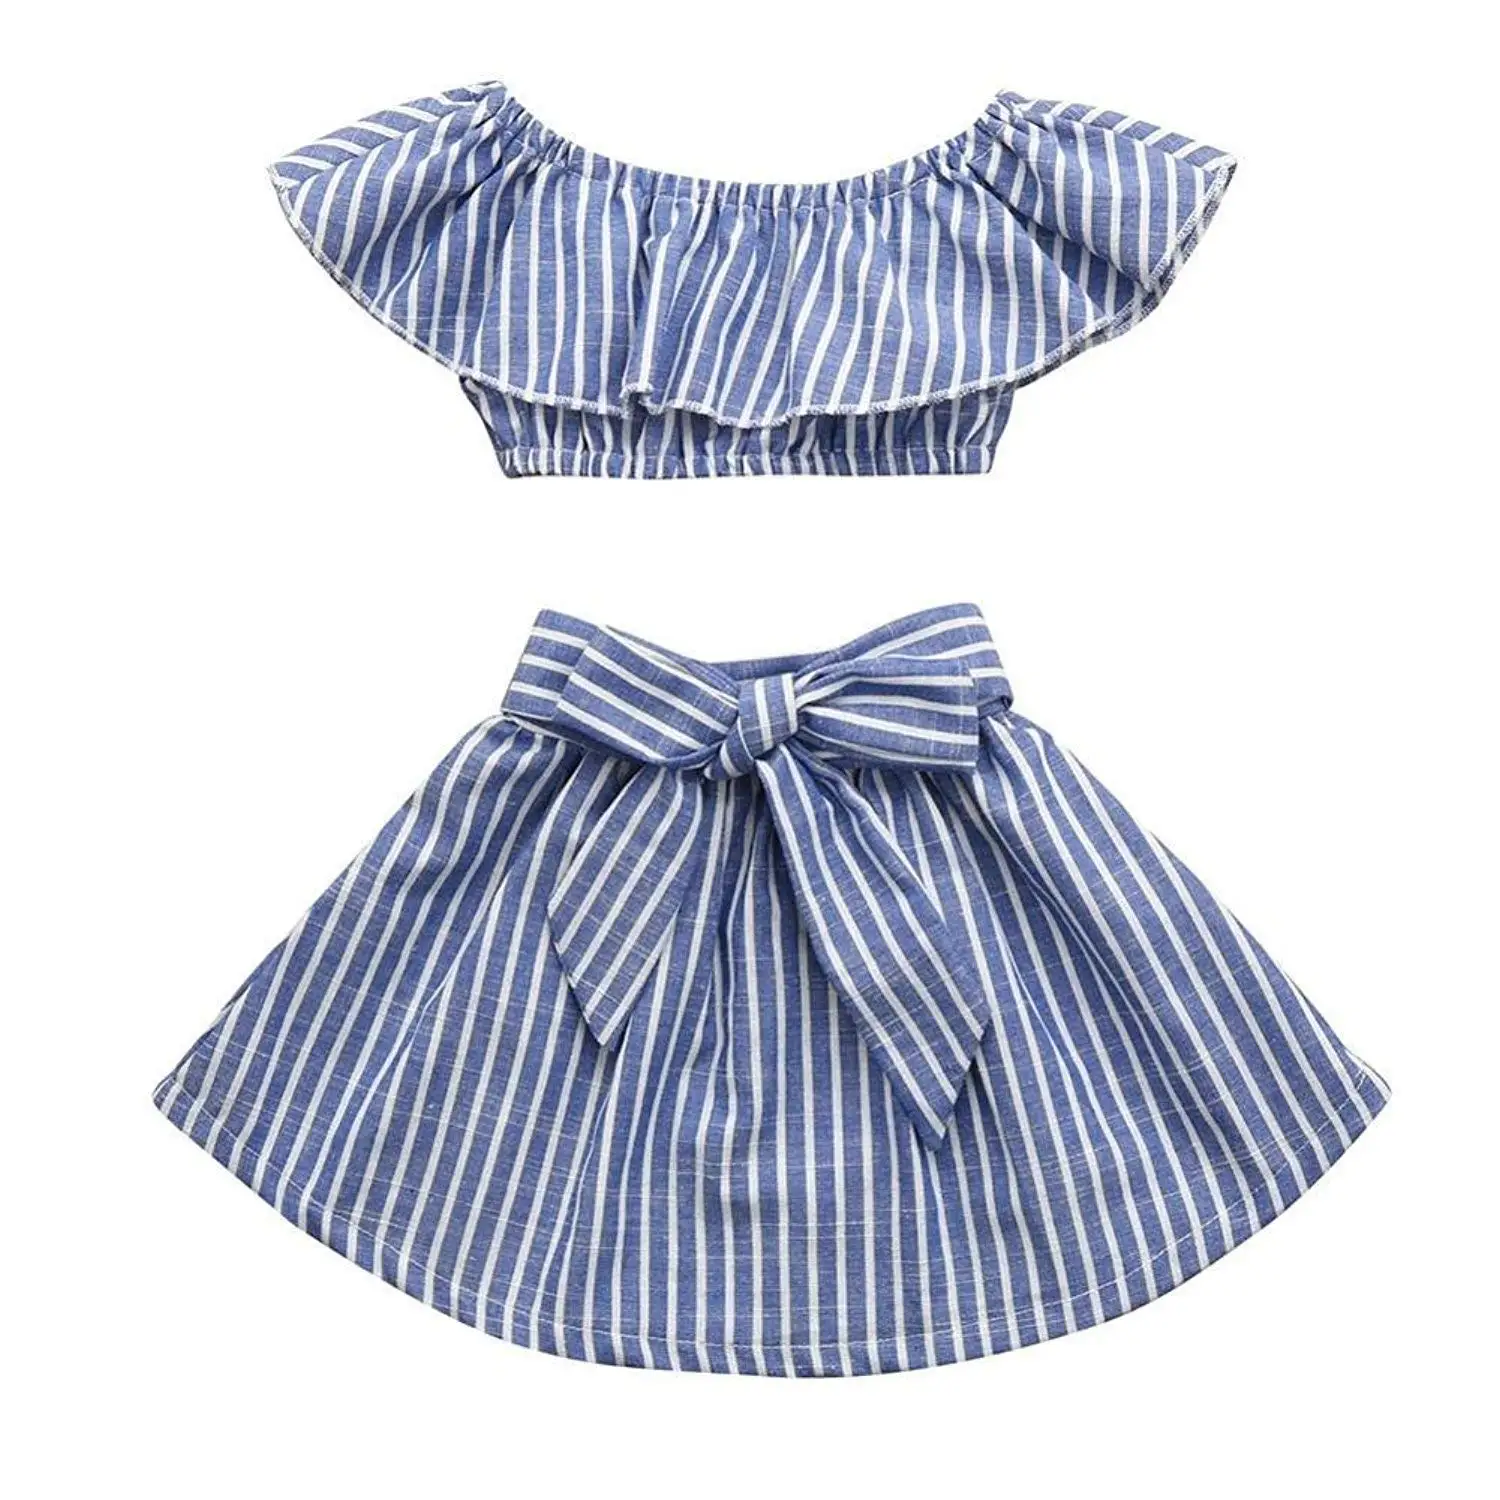 Oklady/Одежда для маленьких девочек, летние рубашки, топы с открытыми плечами, юбка с бантом, комплект одежды в полоску